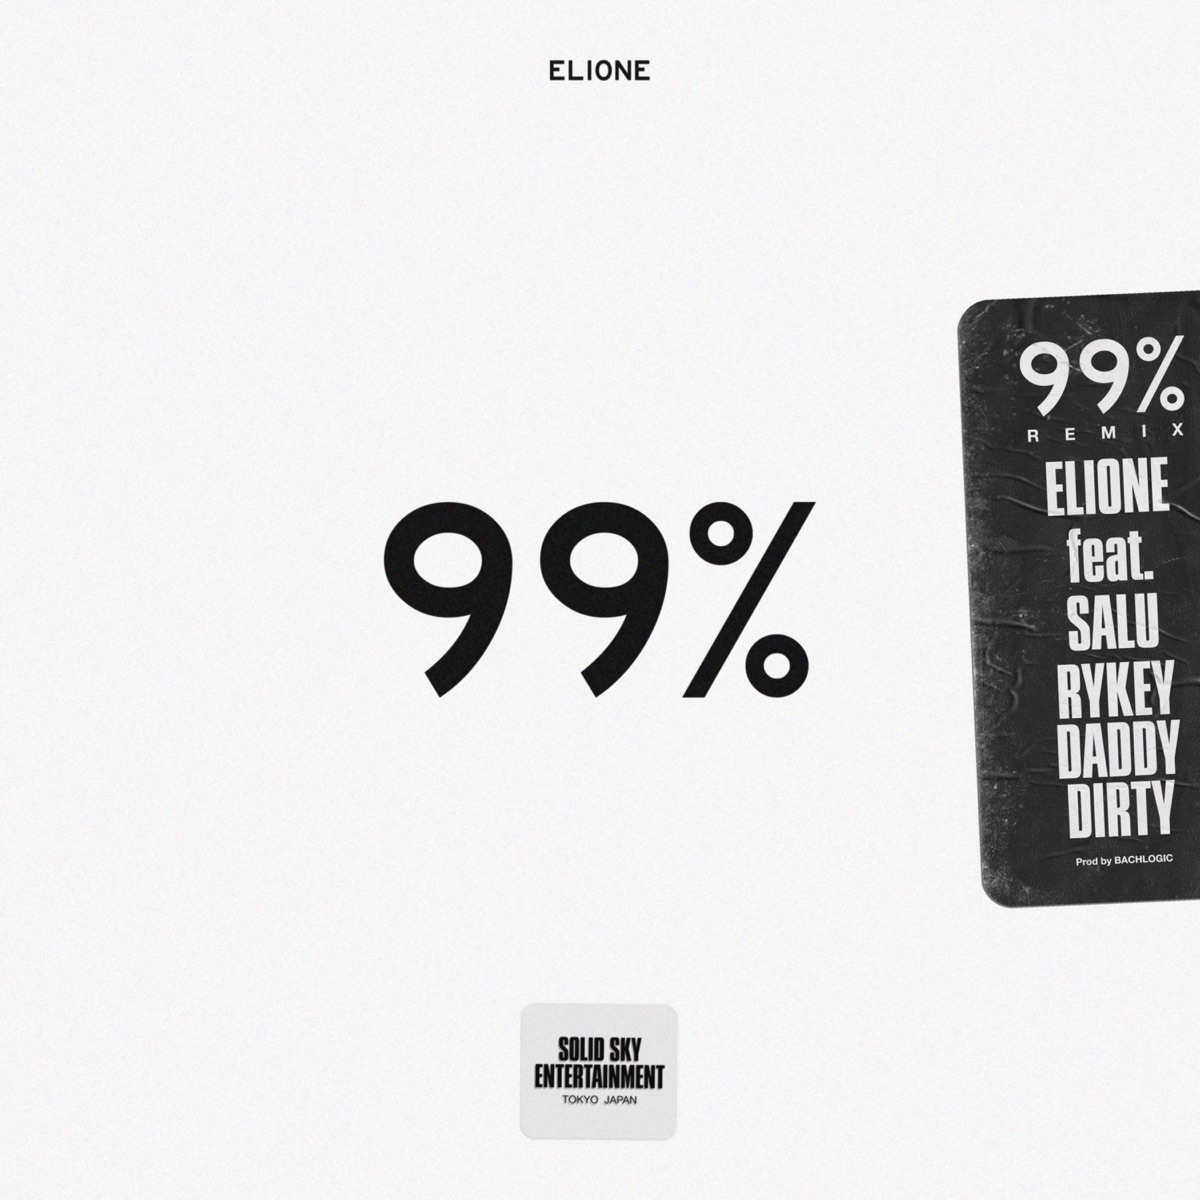 『ELIONE - 99% (feat. SALU & RYKEYDADDYDIRTY) [Remix]』収録の『99% (feat. SALU & RYKEYDADDYDIRTY) [Remix]』ジャケット